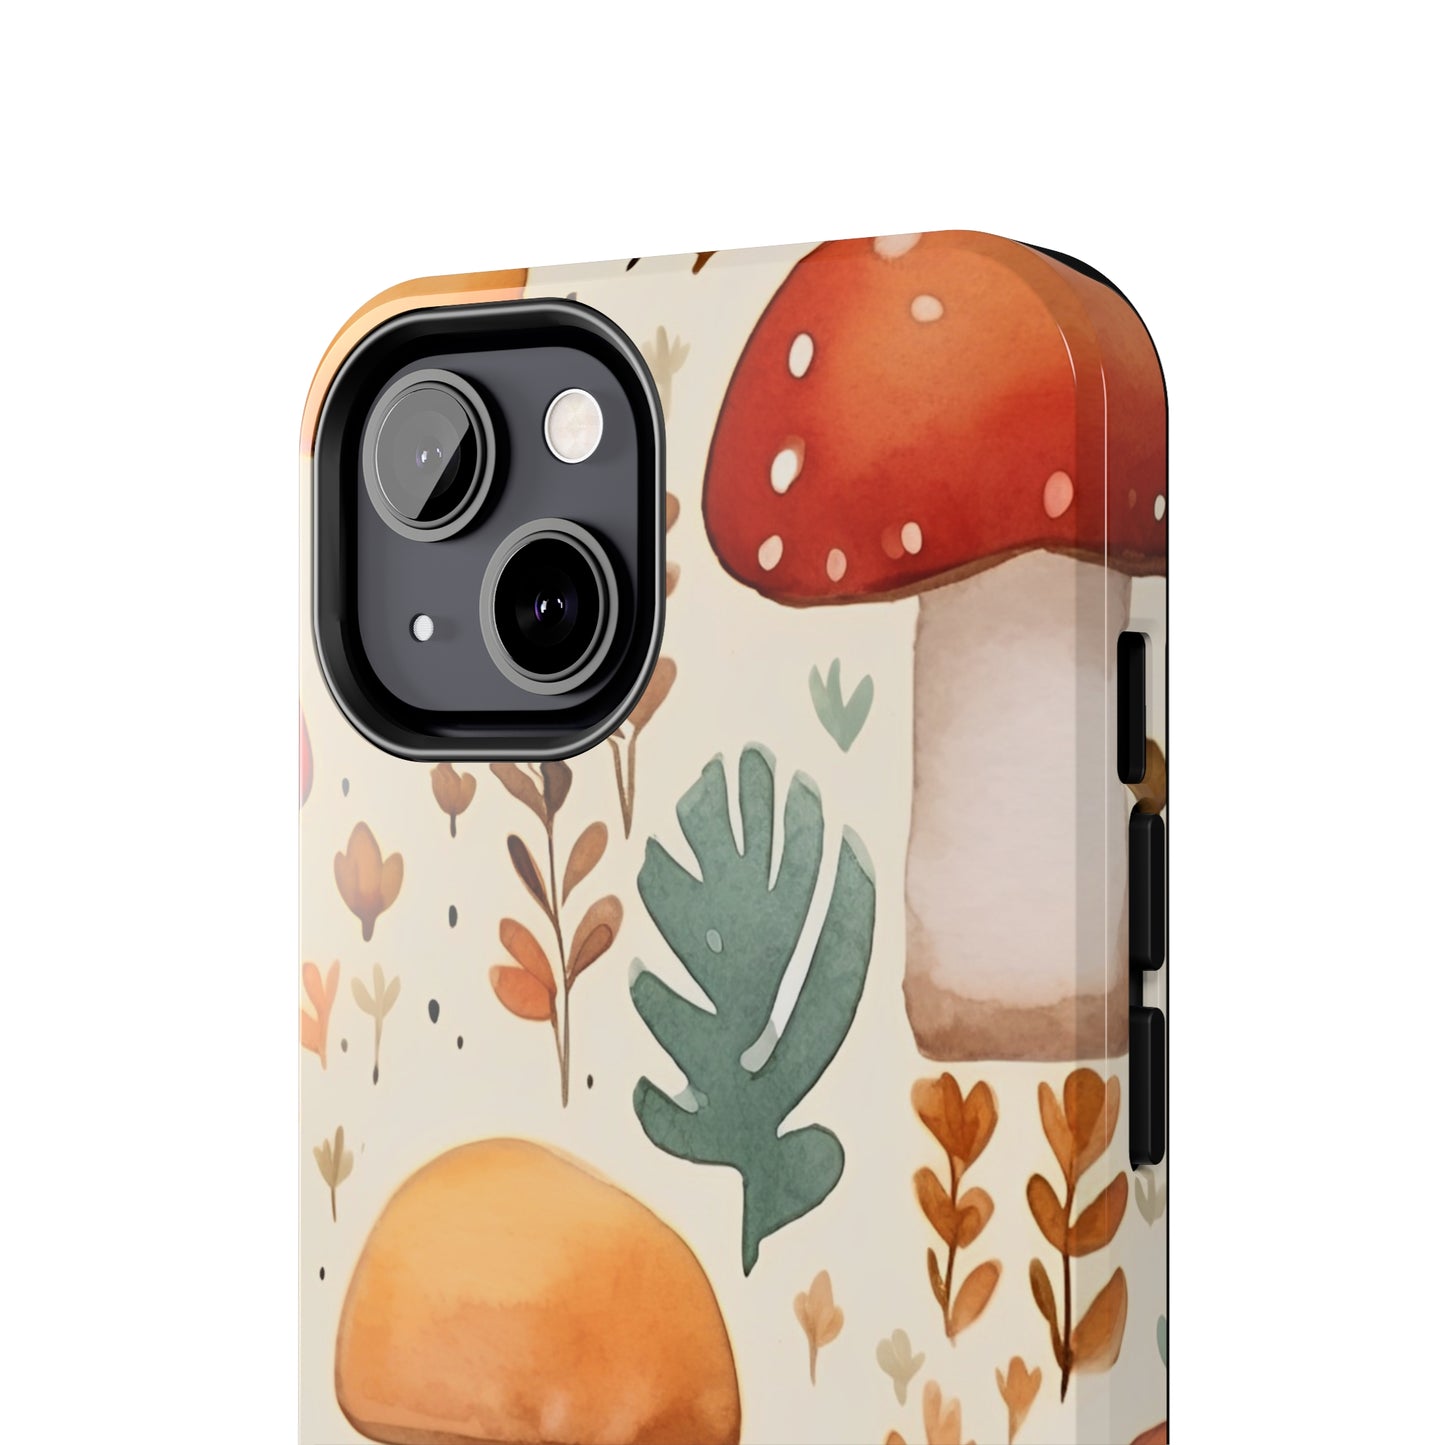 Fall Mushrooms iPhone Tough Phone Cases